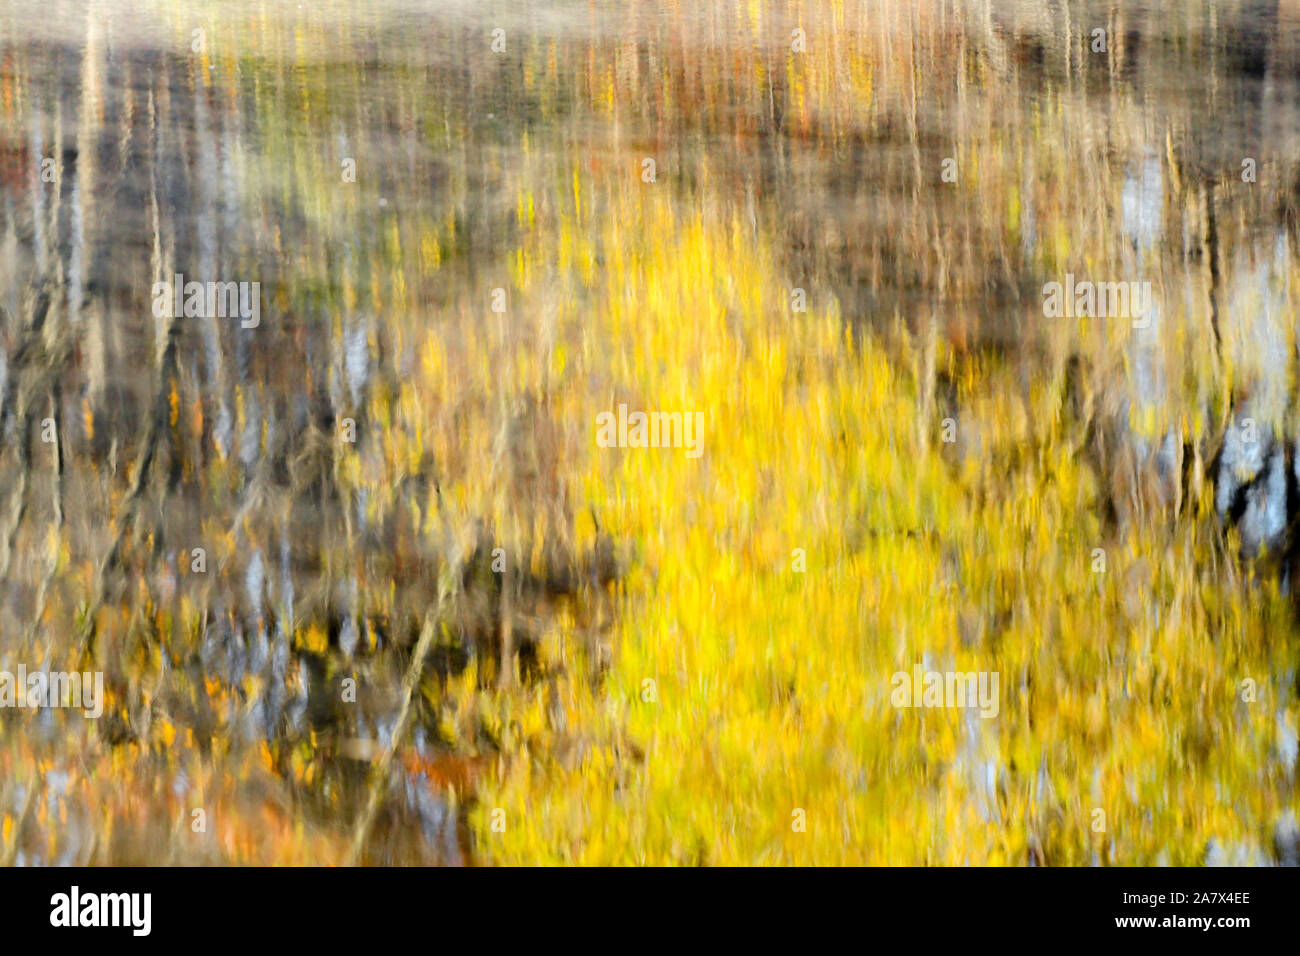 Les feuilles de l'automne reflète dans l'eau - Couleurs d'automne - automne arbres se reflétant - impressionnisme - photographie impressionniste - brouillard de vapeur d'eau - Misty Banque D'Images